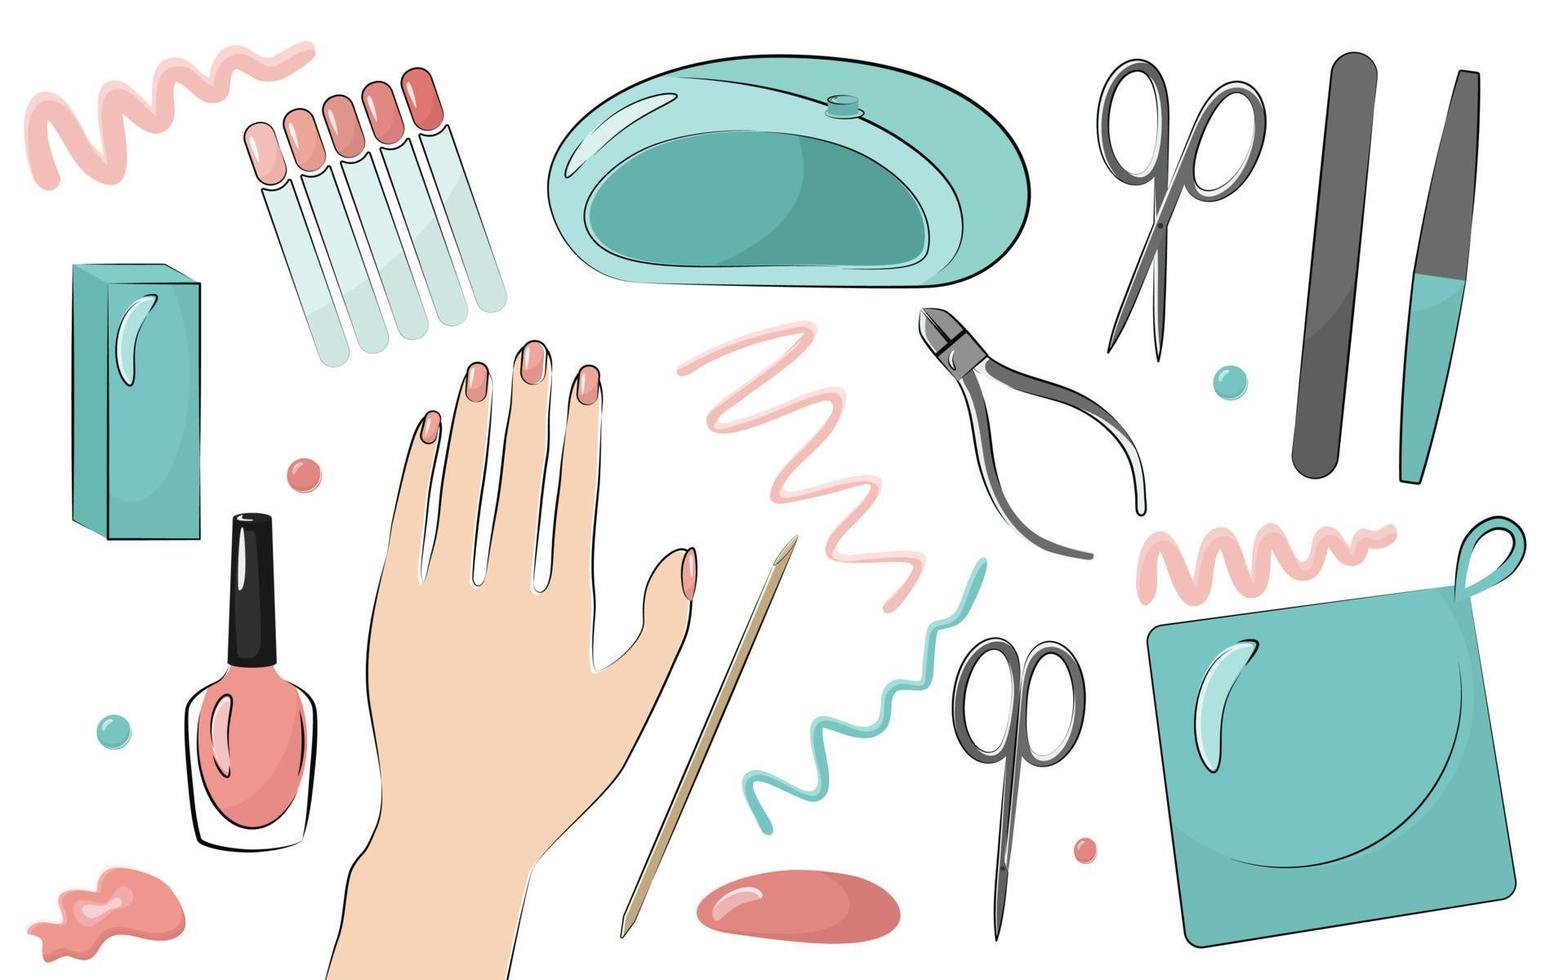 strumenti per manicure e unghie dipinte da donna. lima per unghie, forbici, tagliaunghie, smalto. una serie di illustrazioni vettoriali isolate.